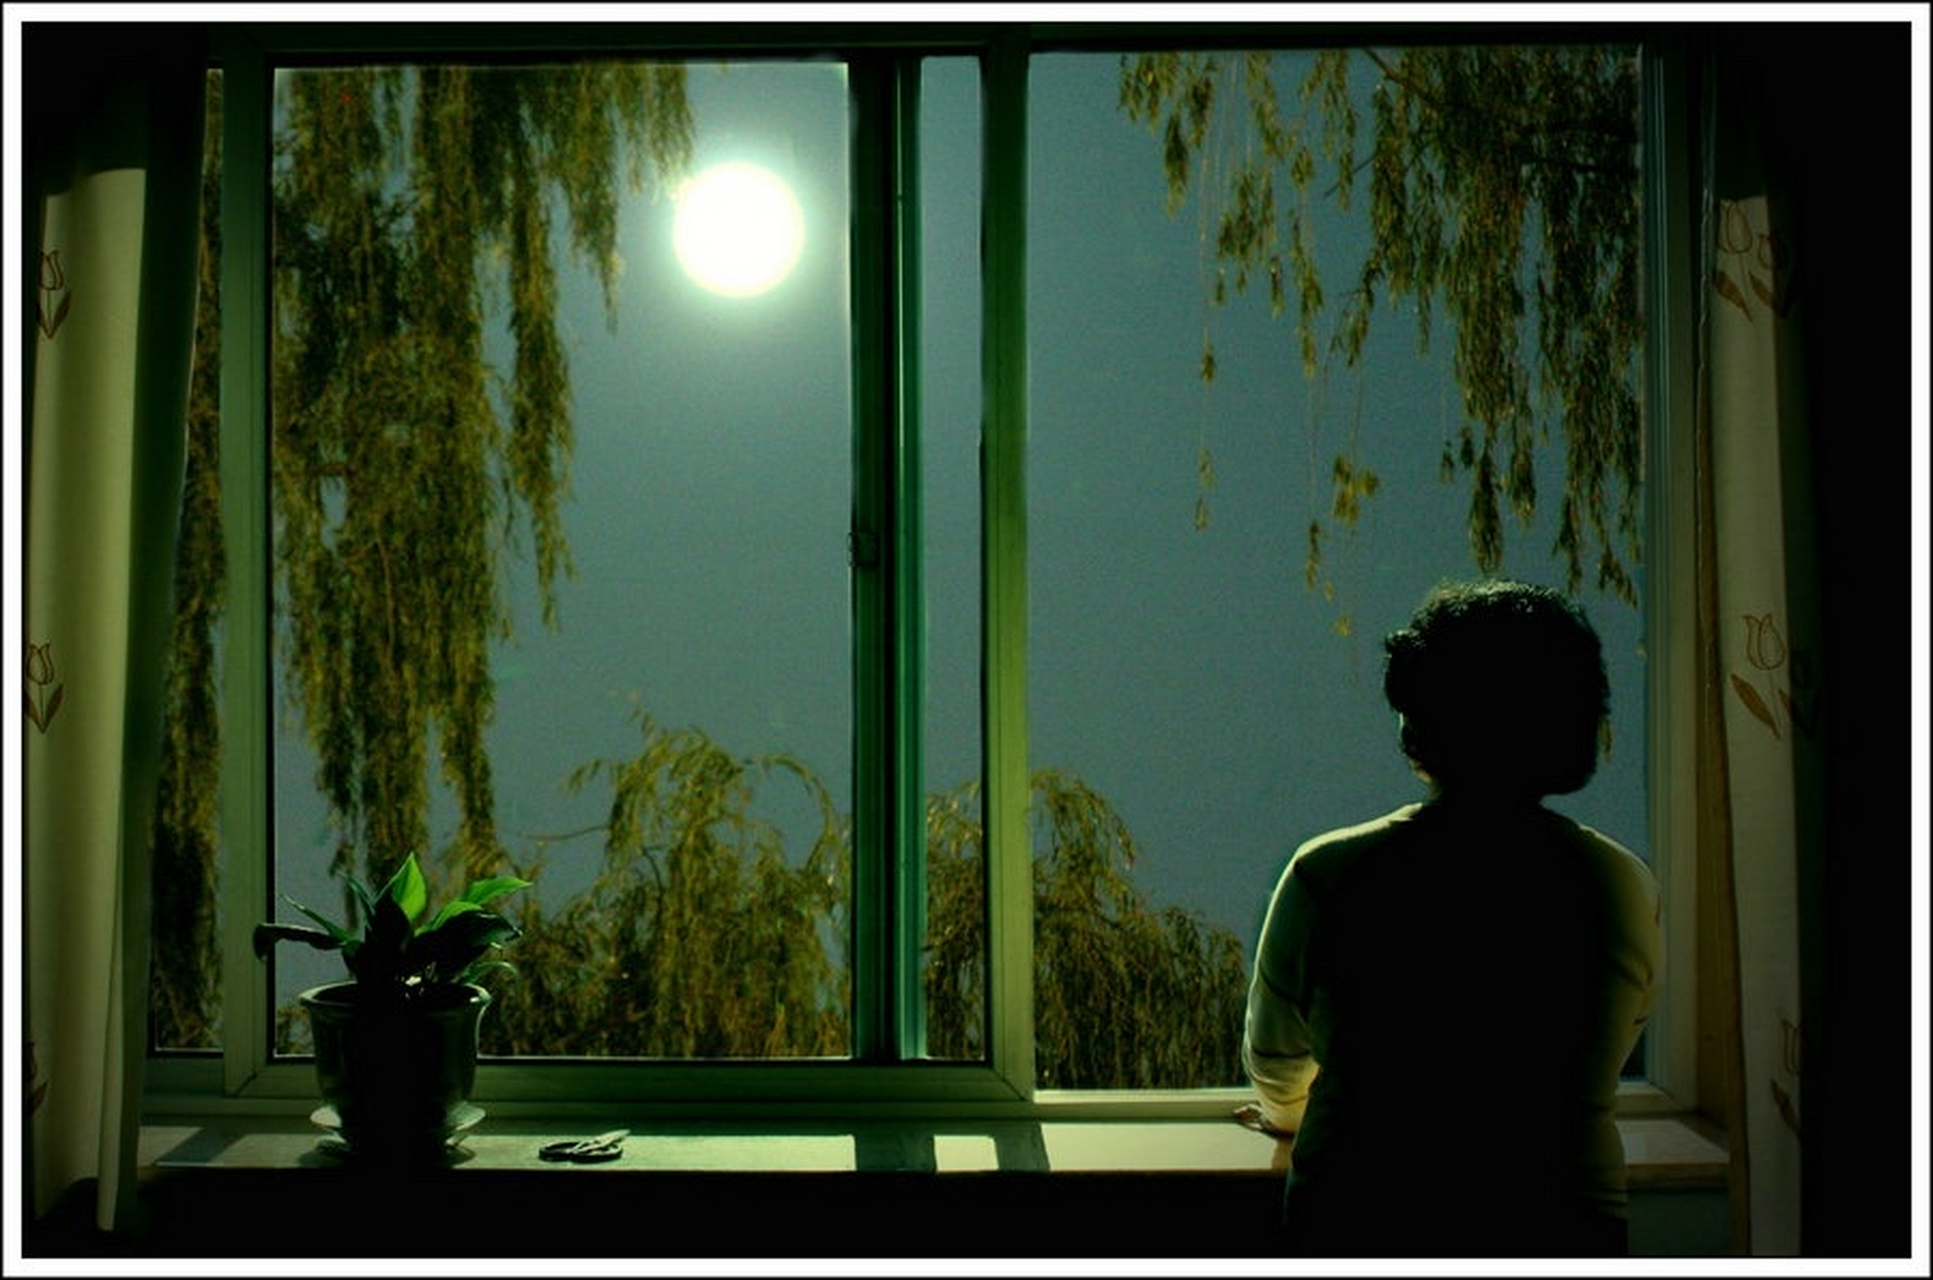 深夜一个人看月亮图片图片